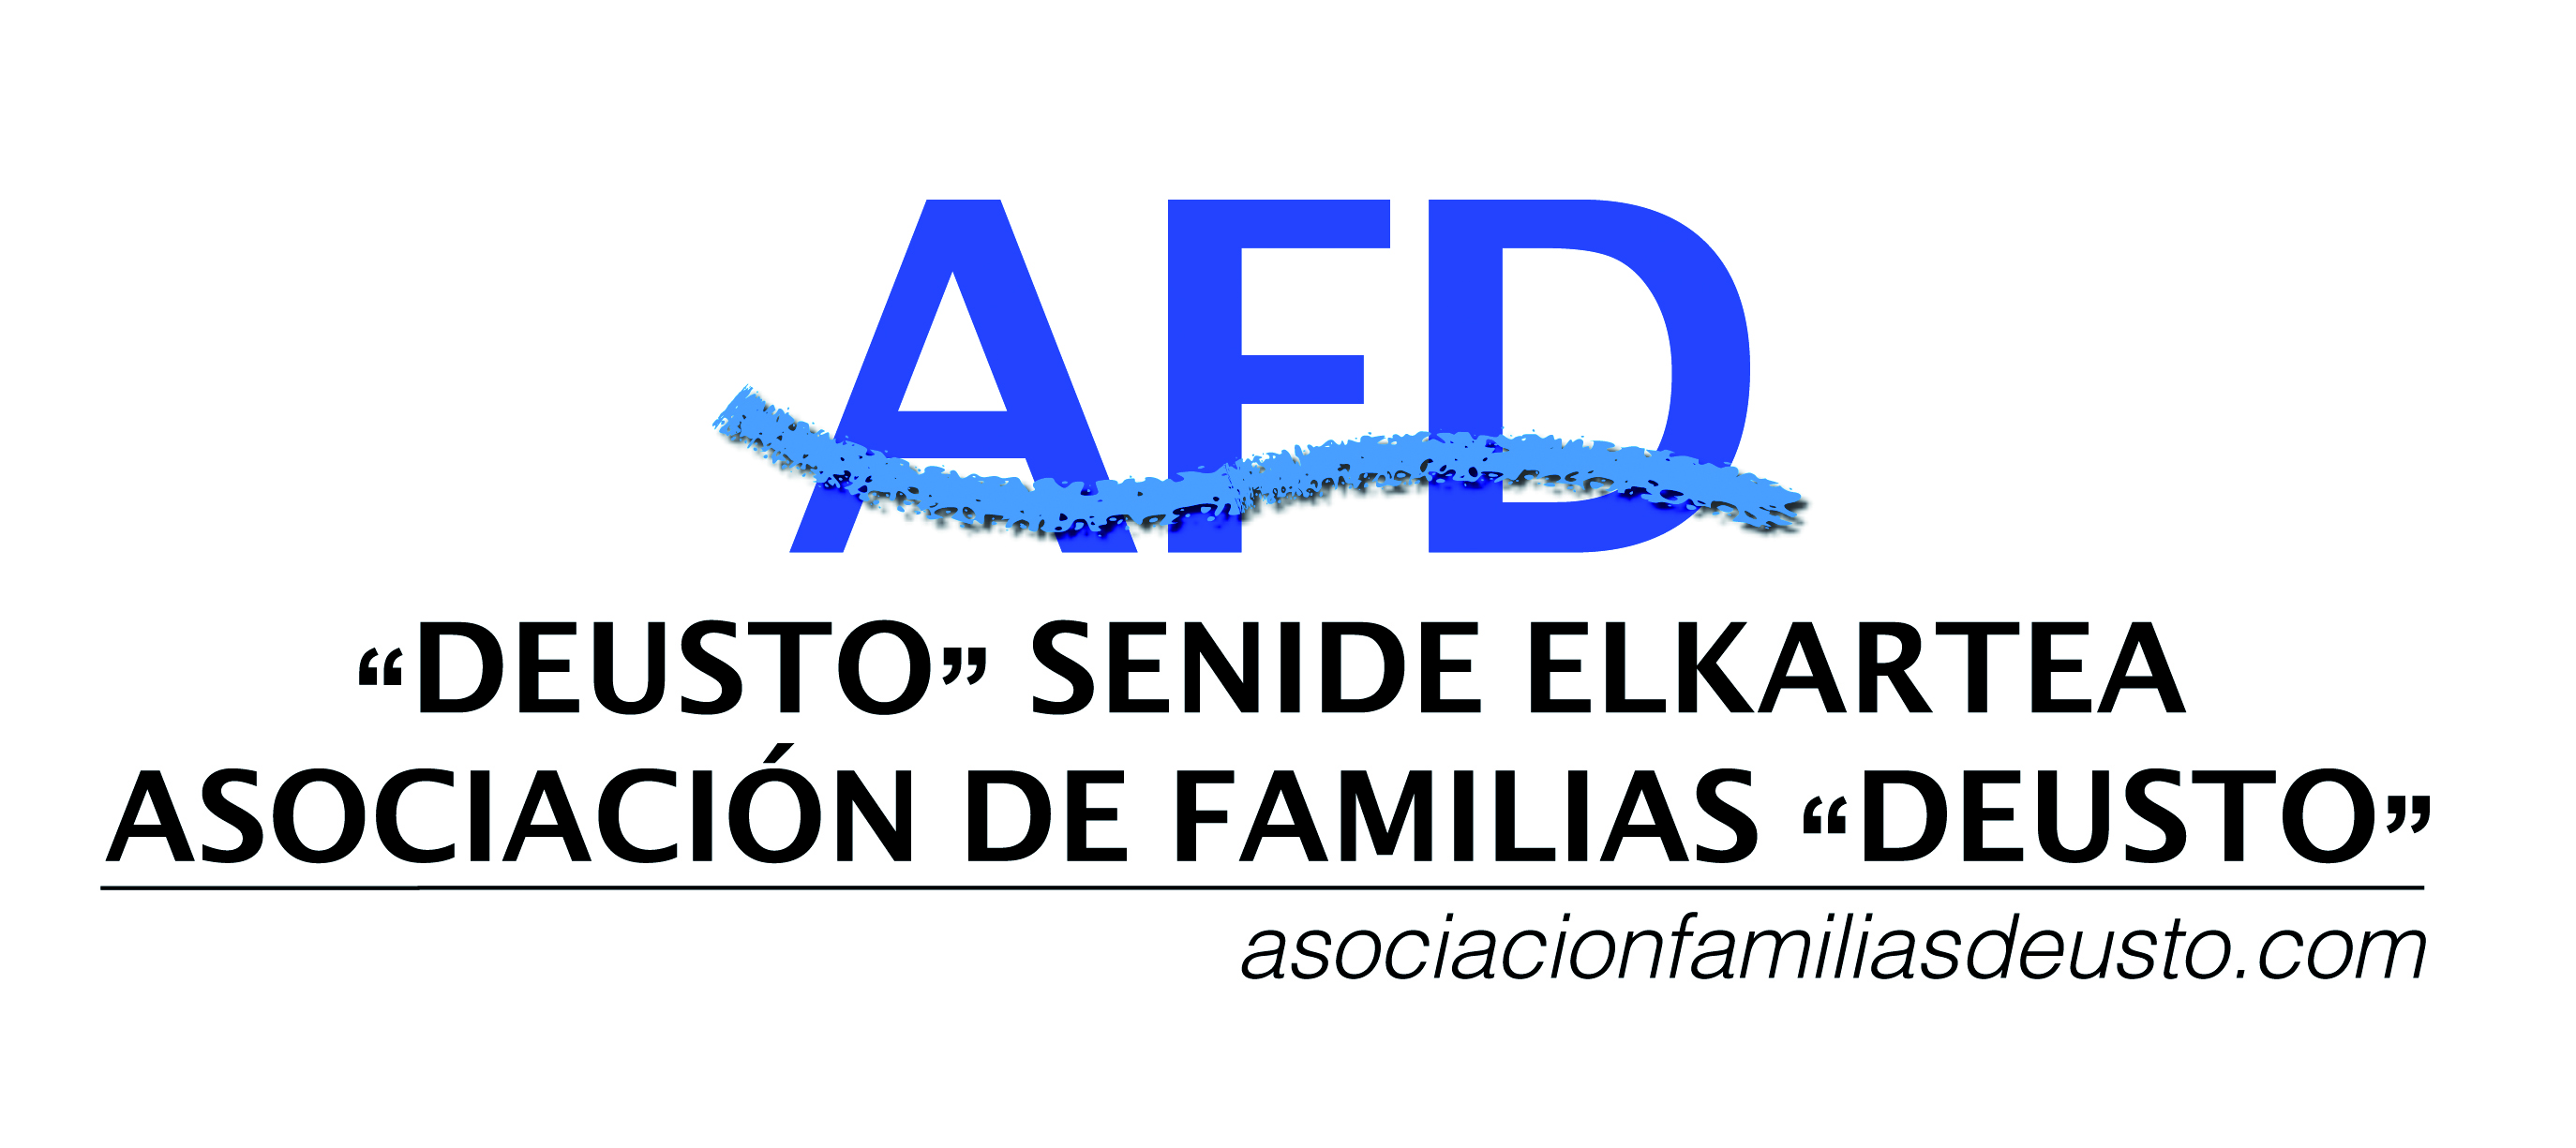 logo_affdeusto